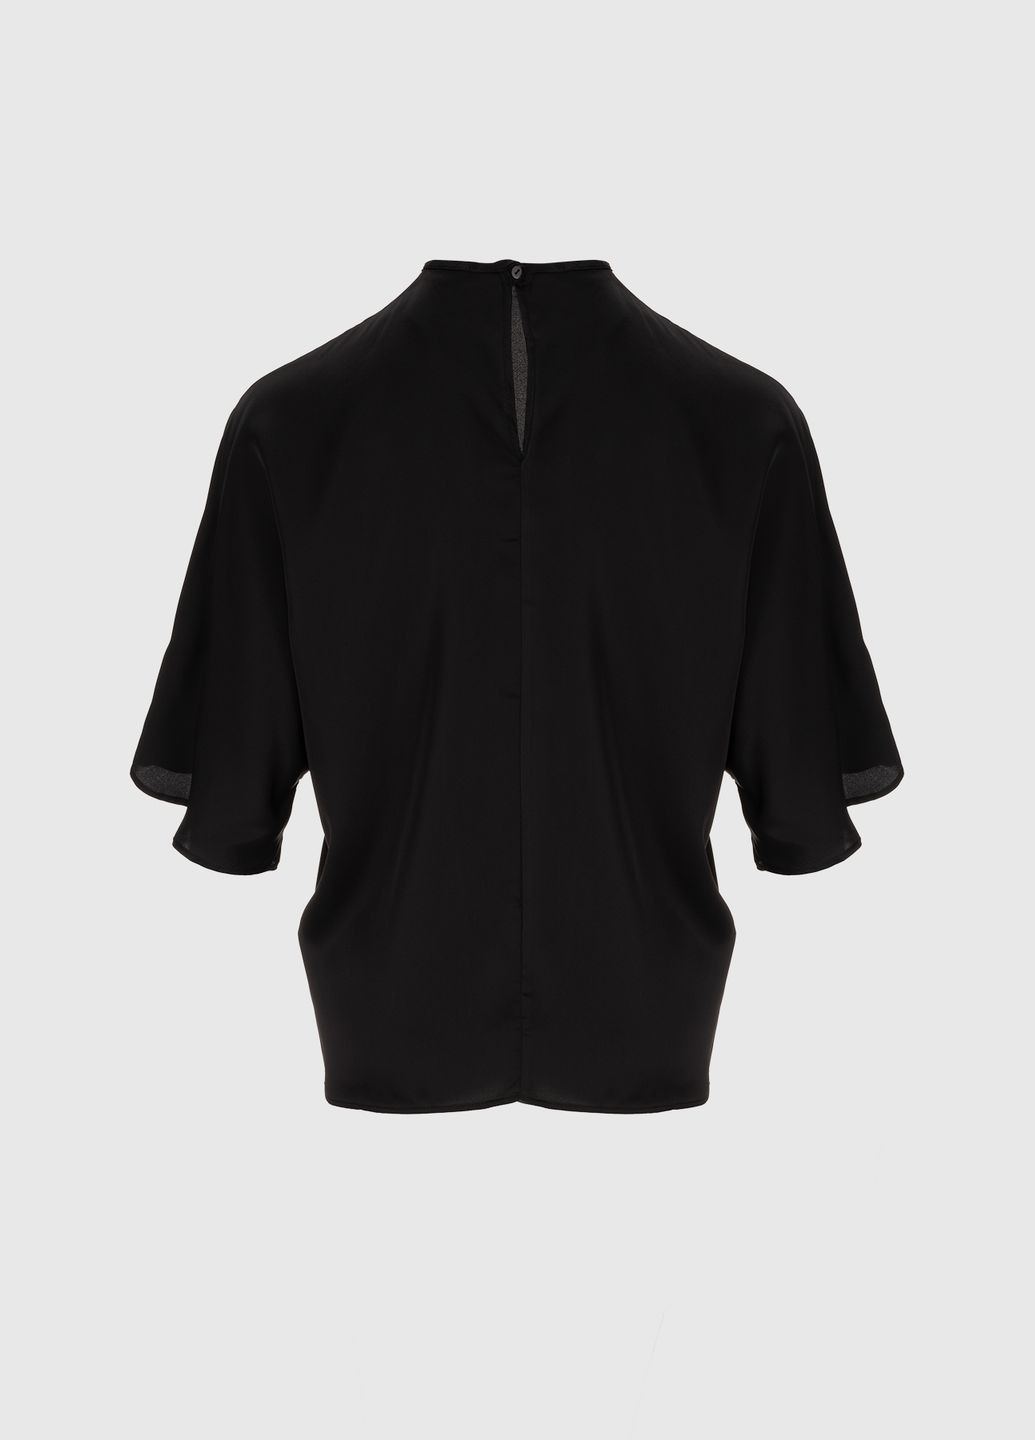 Черная демисезонная блуза Lefon